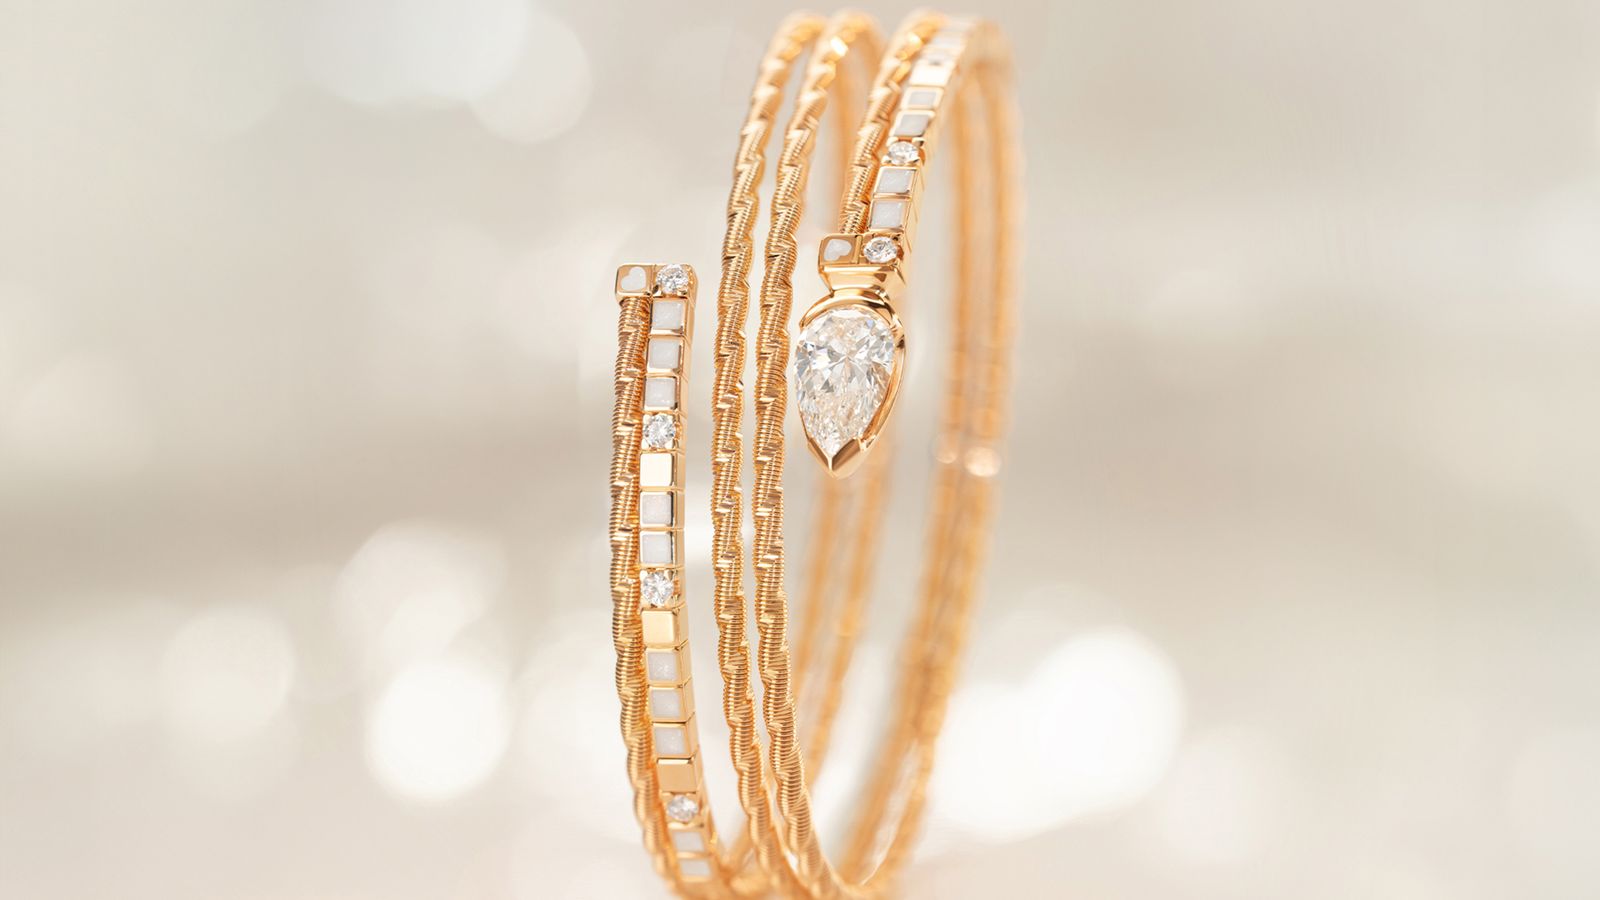 Das Armband UMARME MICH Diamanttropfen perlmutt aus 18-karätigem federnden Gold auf Mood Hintergrund.